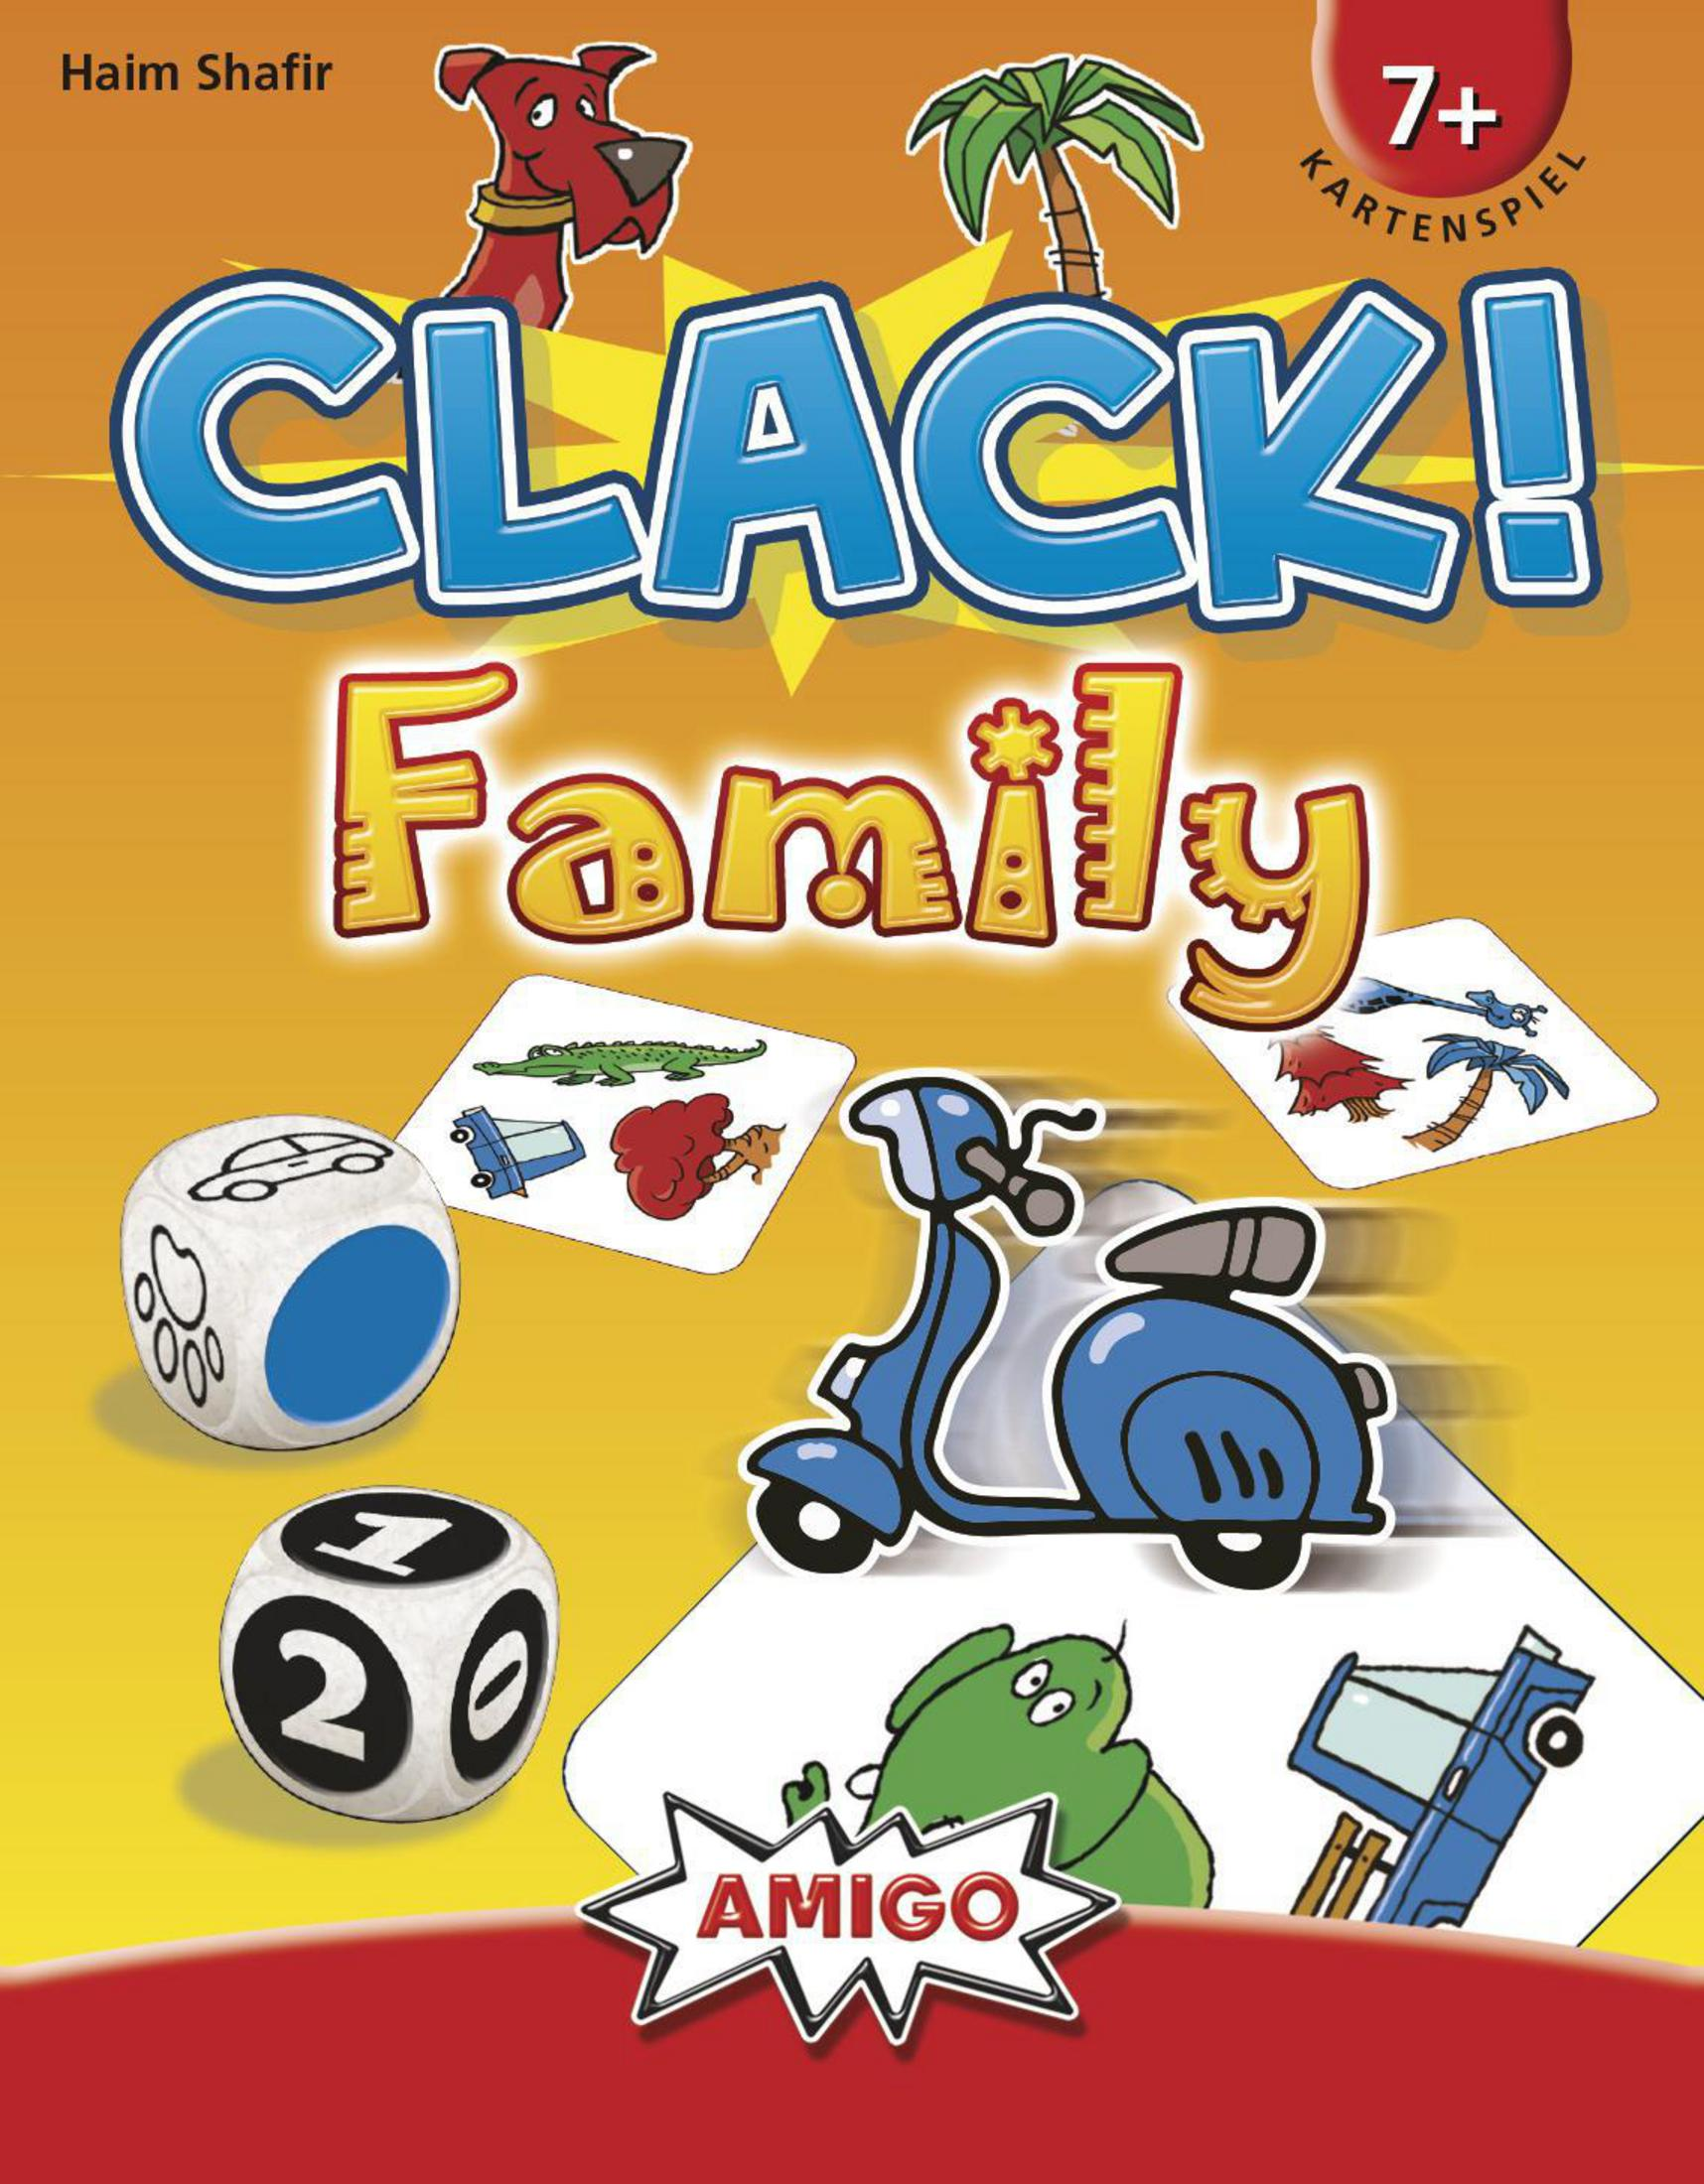 AMIGO FAMILY CLACK! Kartenspiel 02104